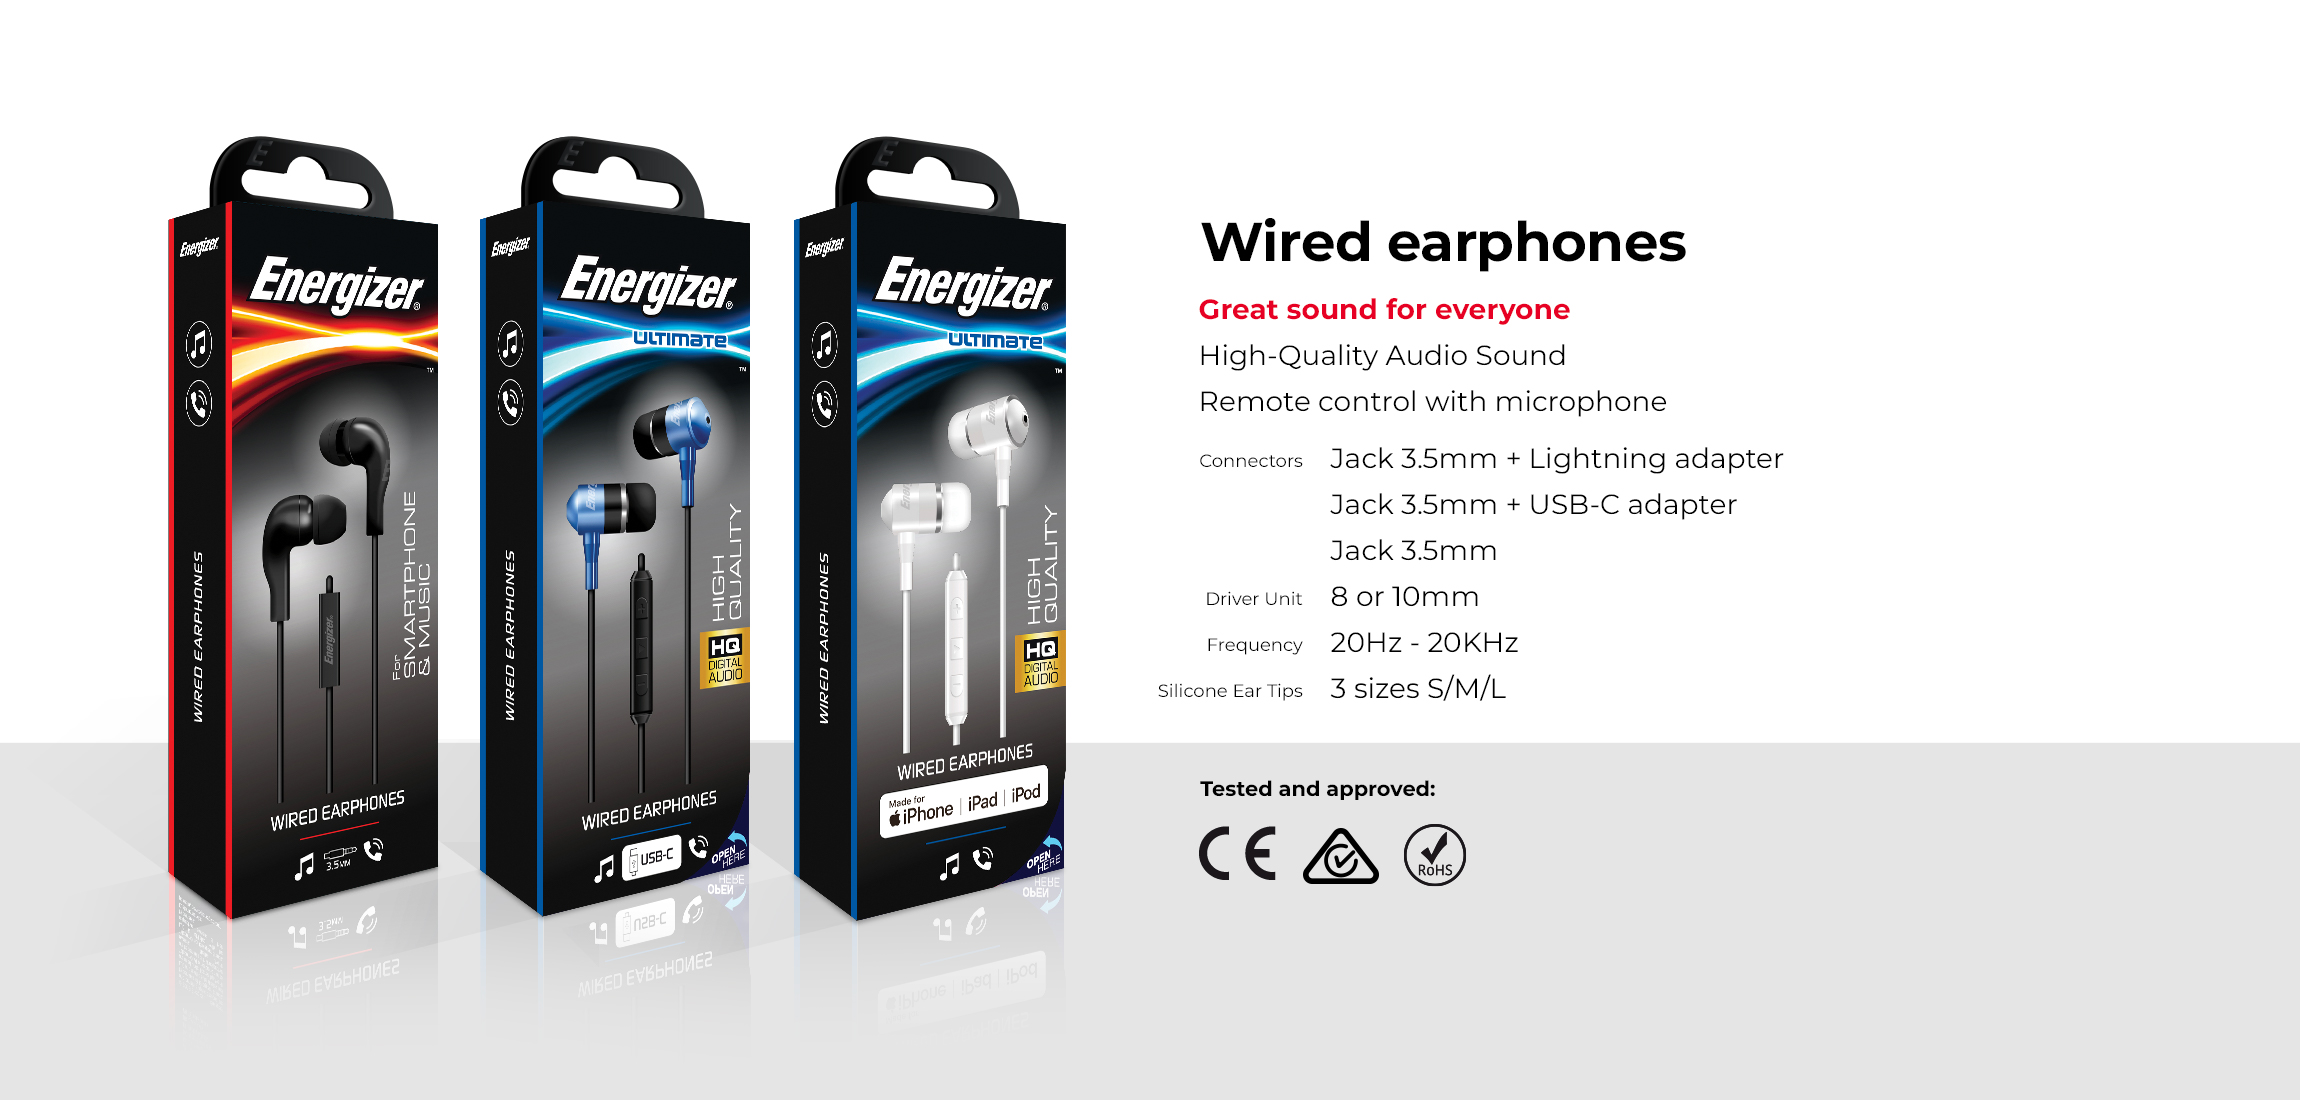 AT-Wired-Earphones-Packaging-EN.jpg